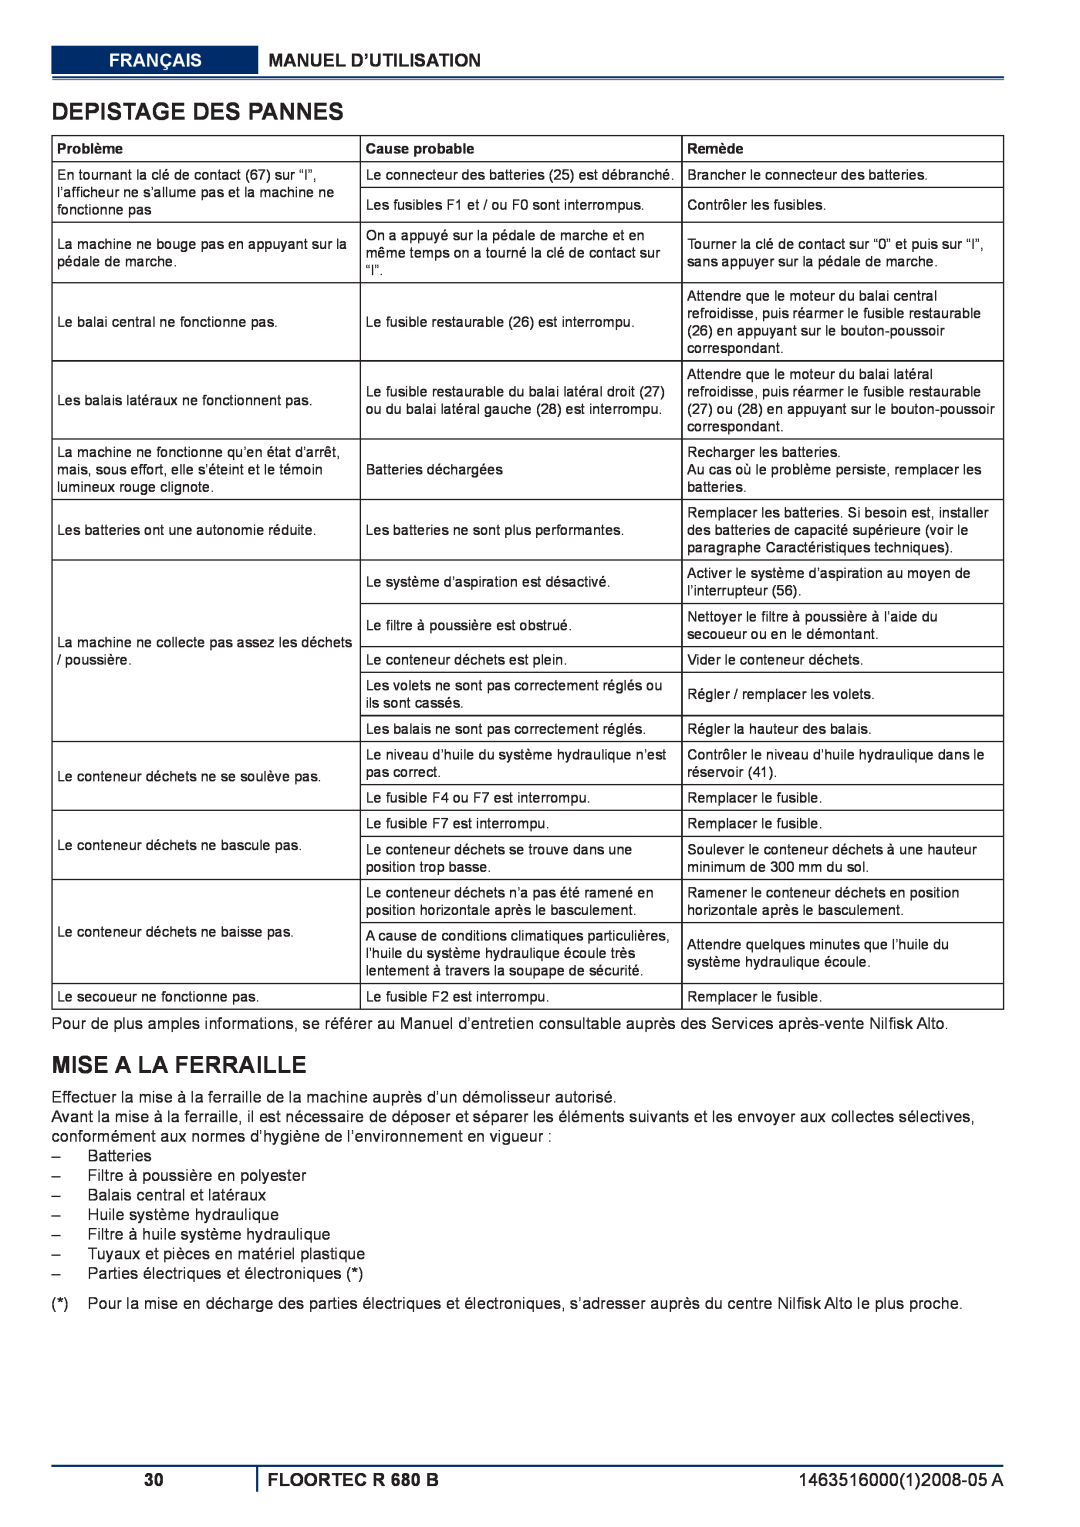 Nilfisk-ALTO Depistage Des Pannes, Mise A La Ferraille, Français Manuel D’Utilisation, FLOORTEC R 680 B 